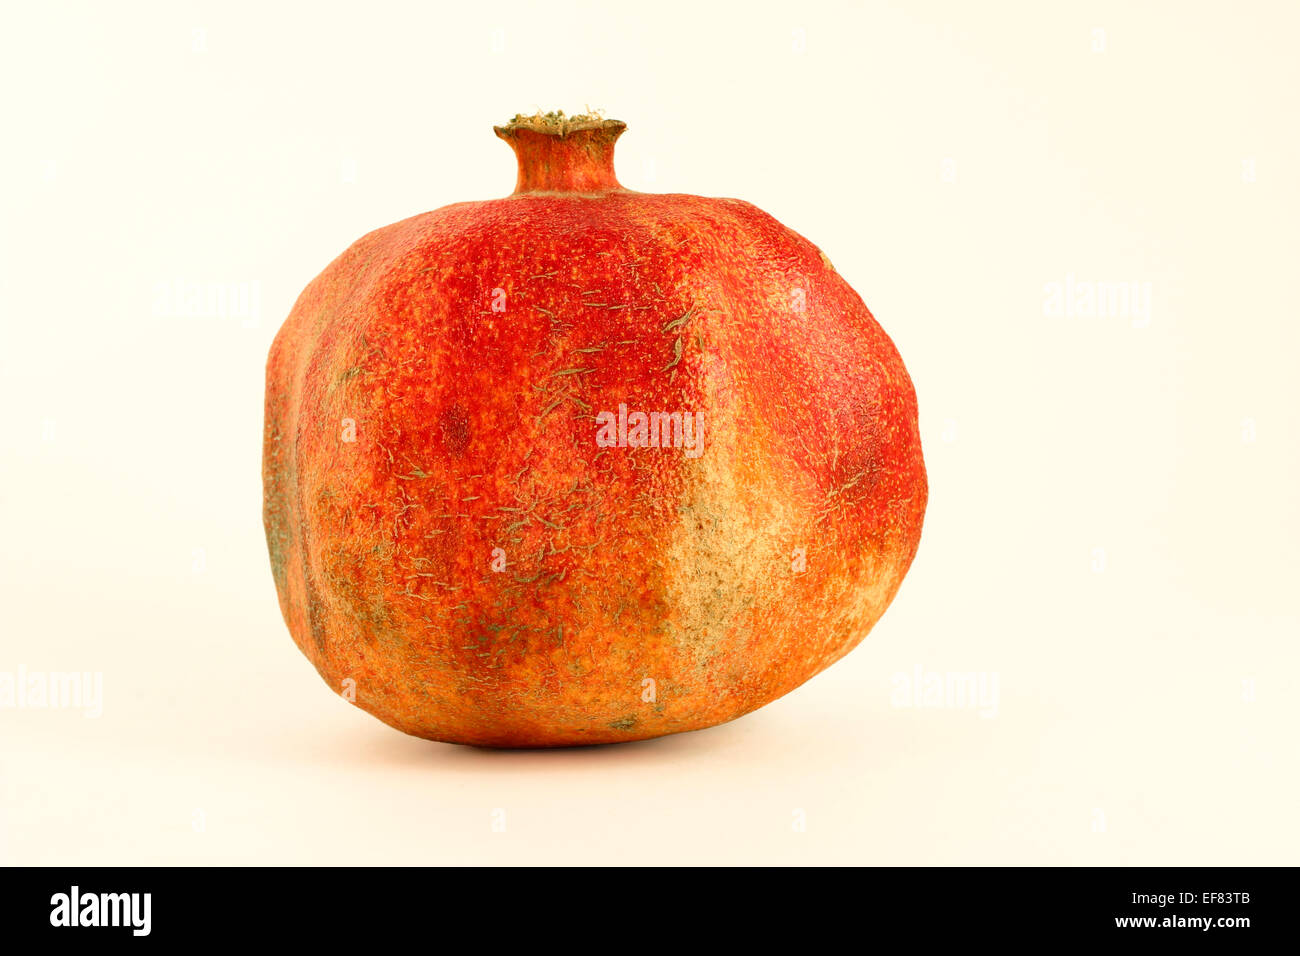 Dettaglio del melograno - frutta aromatico con un sapore dolce e agro Foto Stock